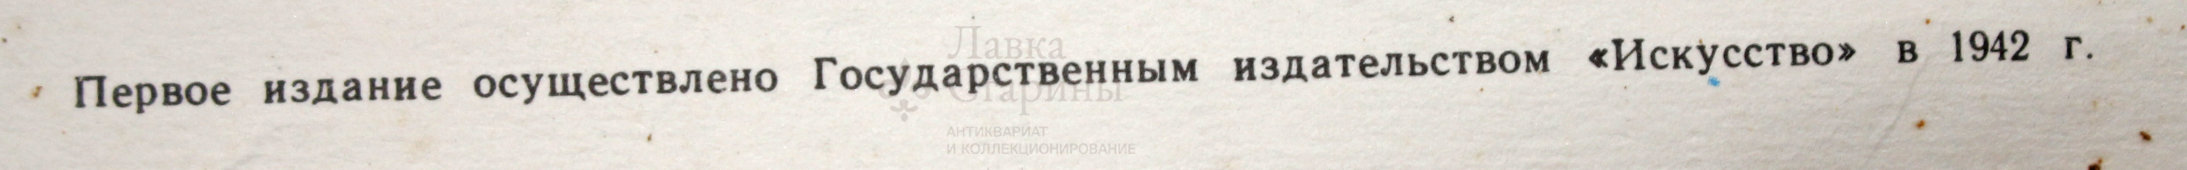 Советский агитационный плакат «Убрать урожай полностью!», 1942 г., репринт 1970-е 